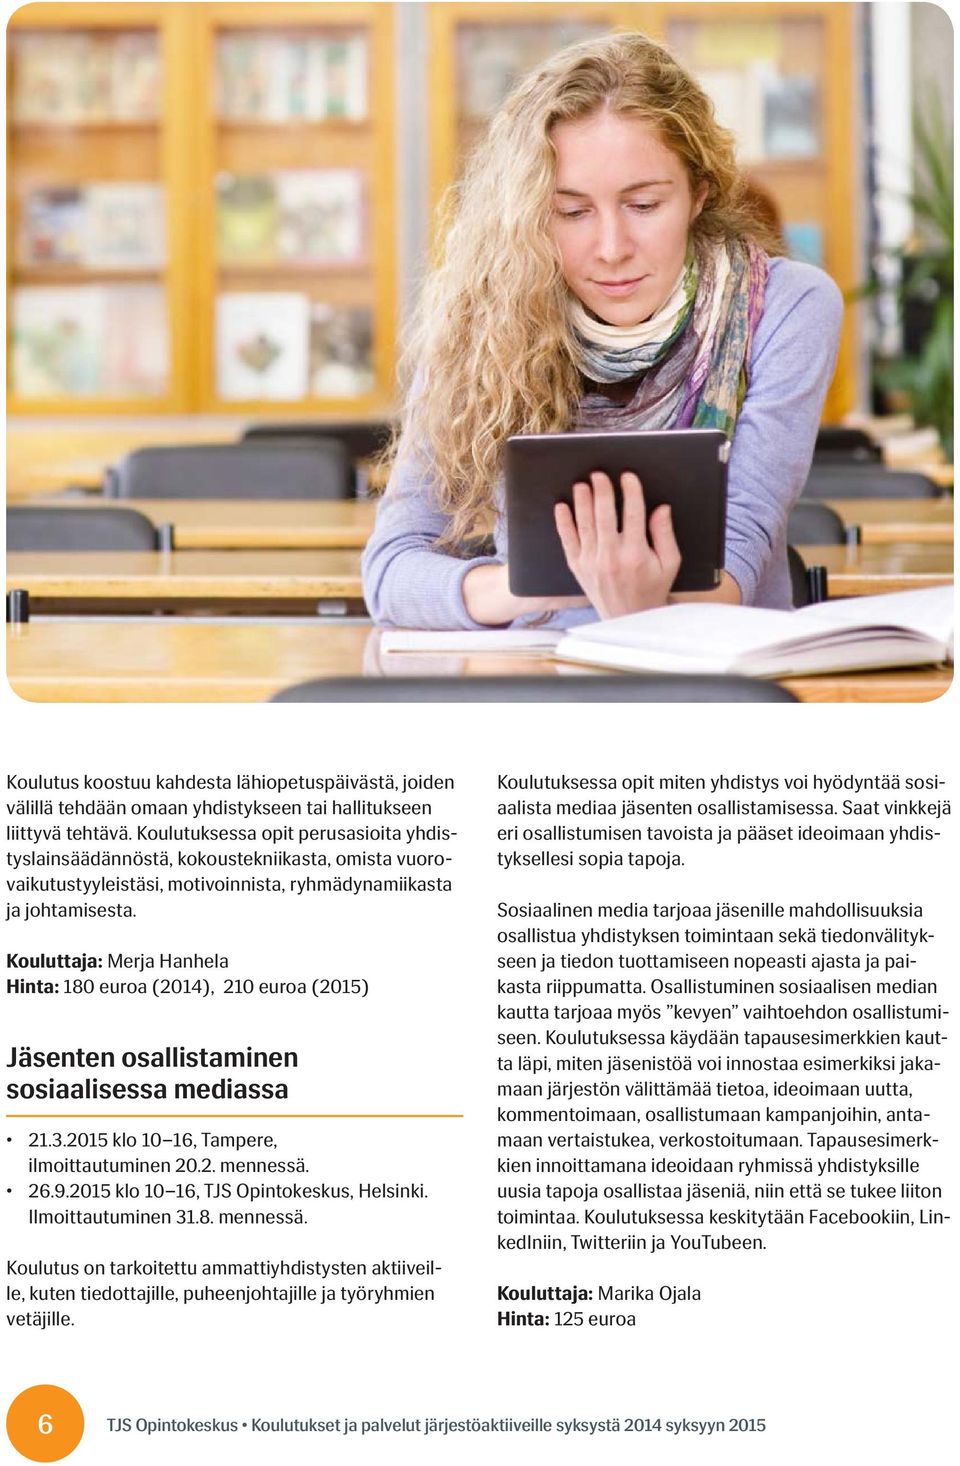 Kouluttaja: Merja Hanhela Hinta: 180 euroa (2014), 210 euroa (2015) Jäsenten osallistaminen sosiaalisessa mediassa 21.3.2015 klo 10 16, Tampere, ilmoittautuminen 20.2. mennessä. 26.9.